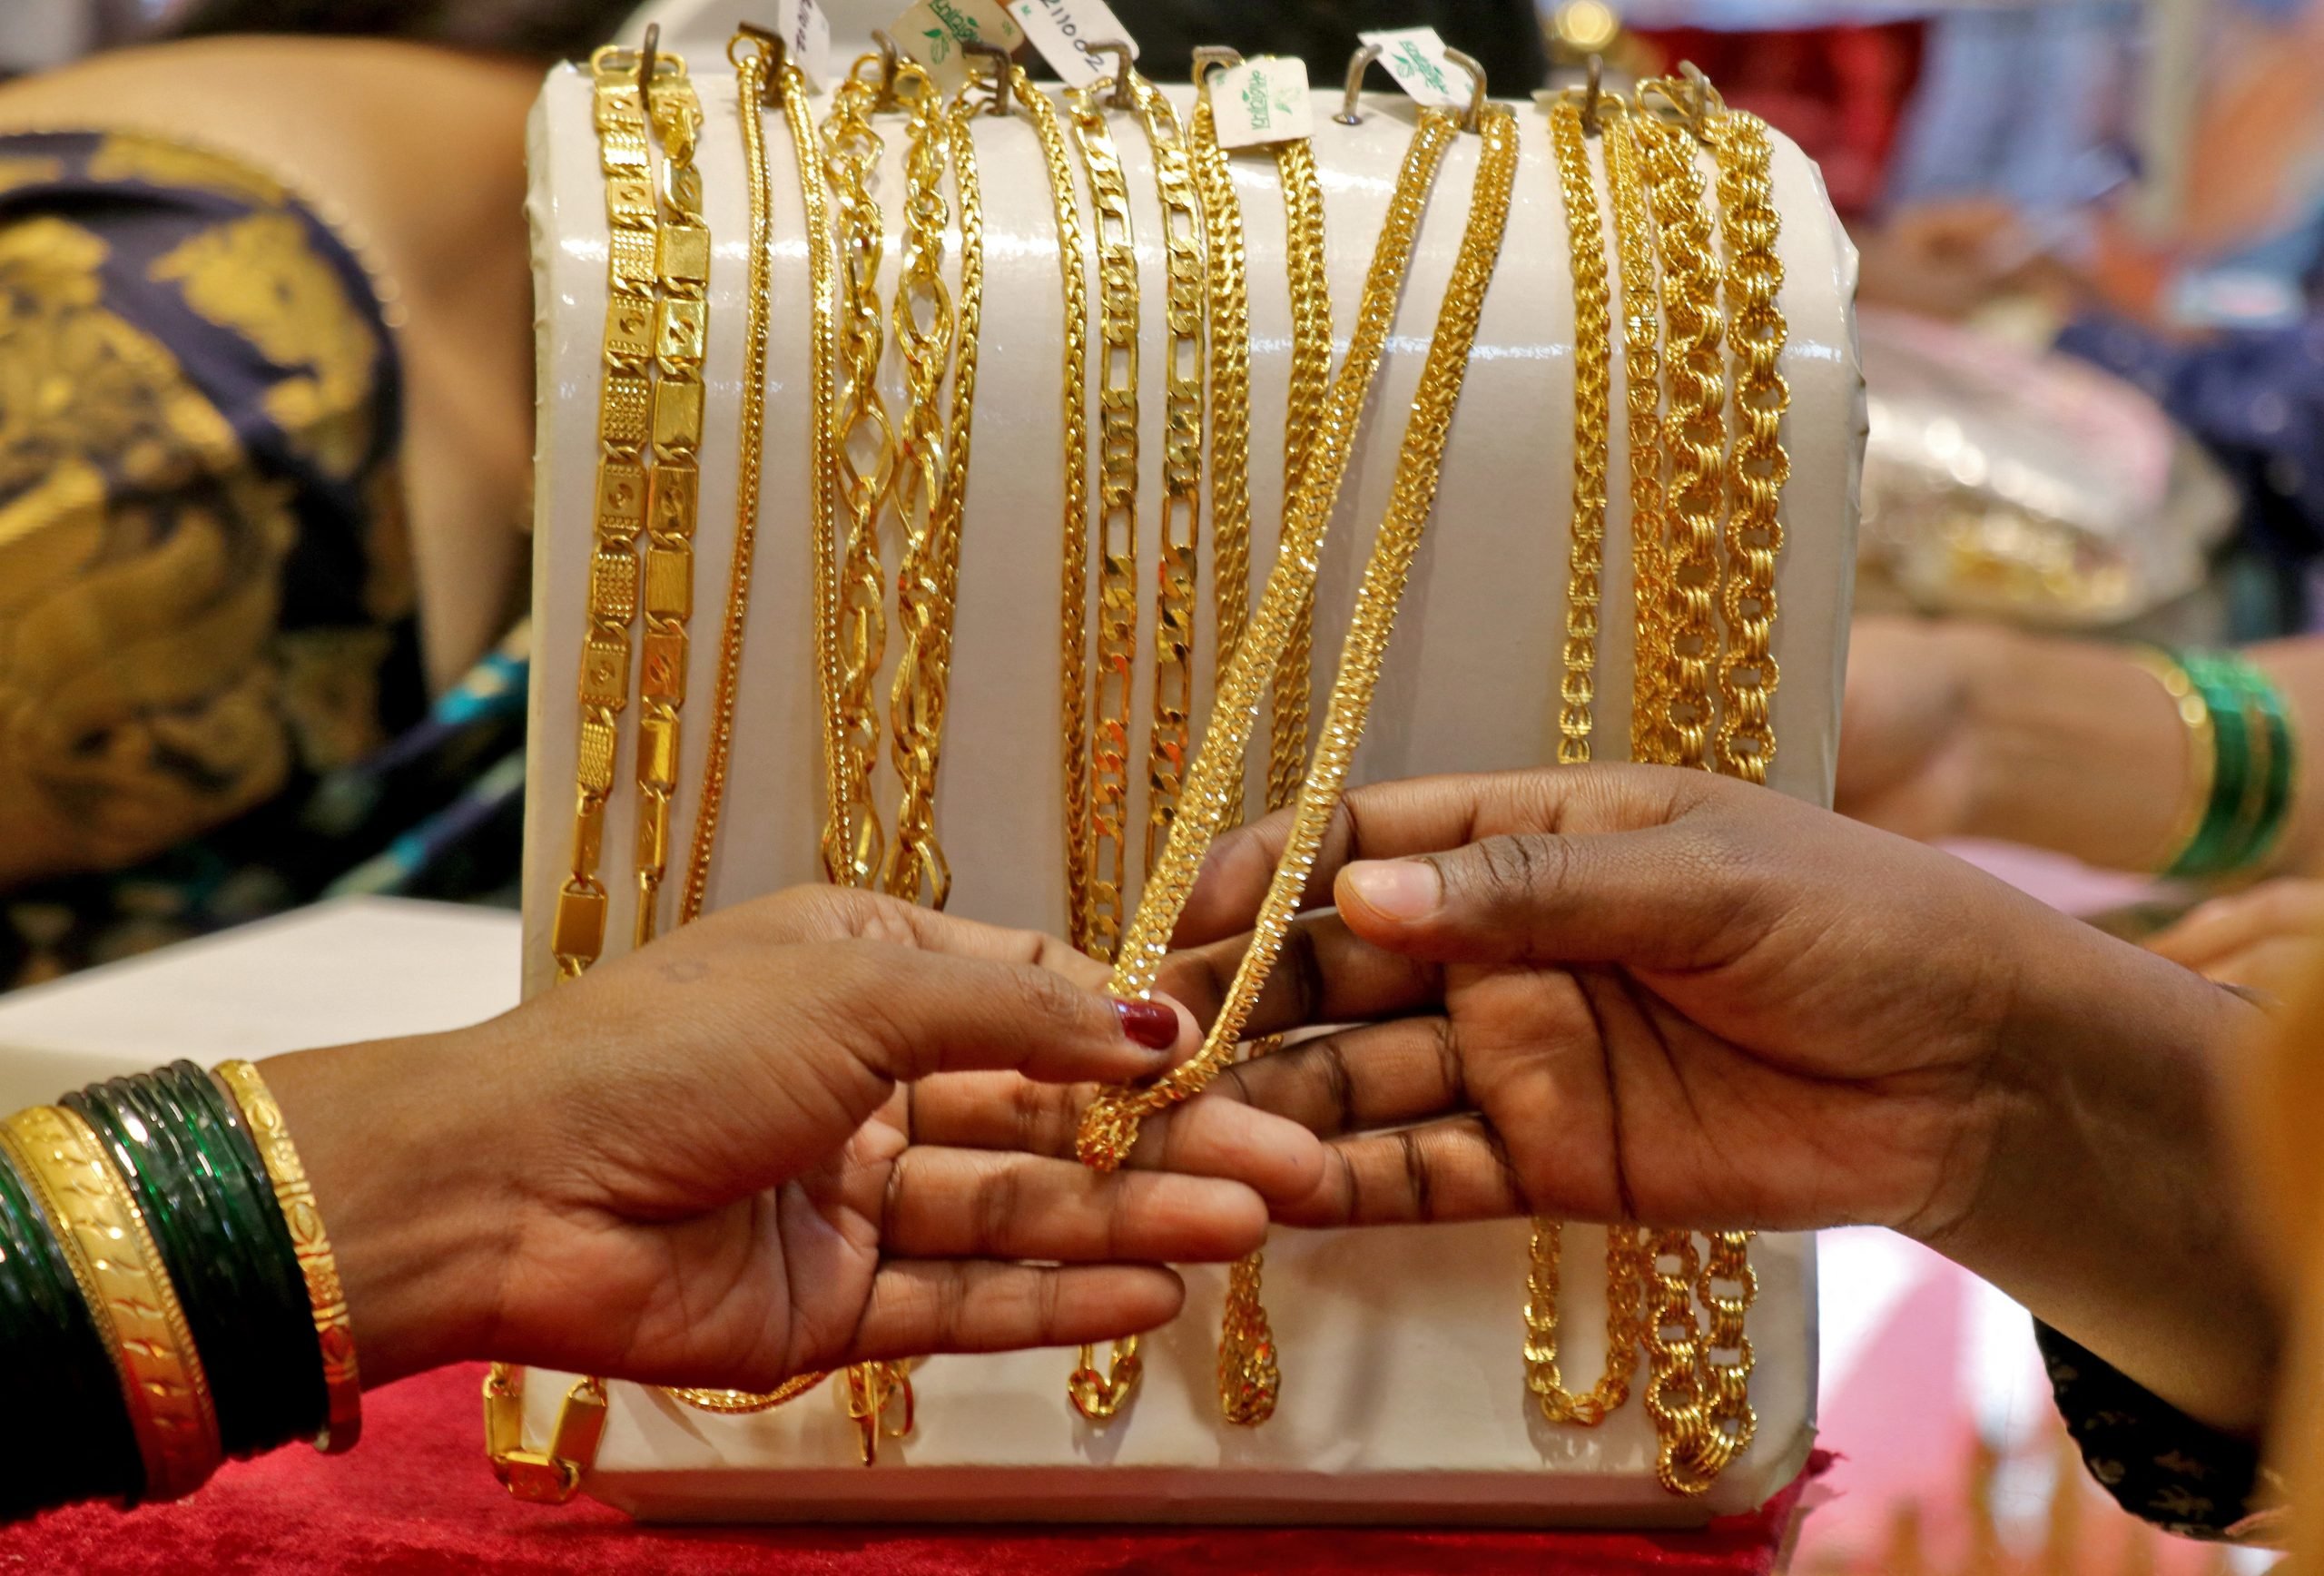 عملاء يتفقّدون مشغولات ذهبية بأحد المعارض في الهند